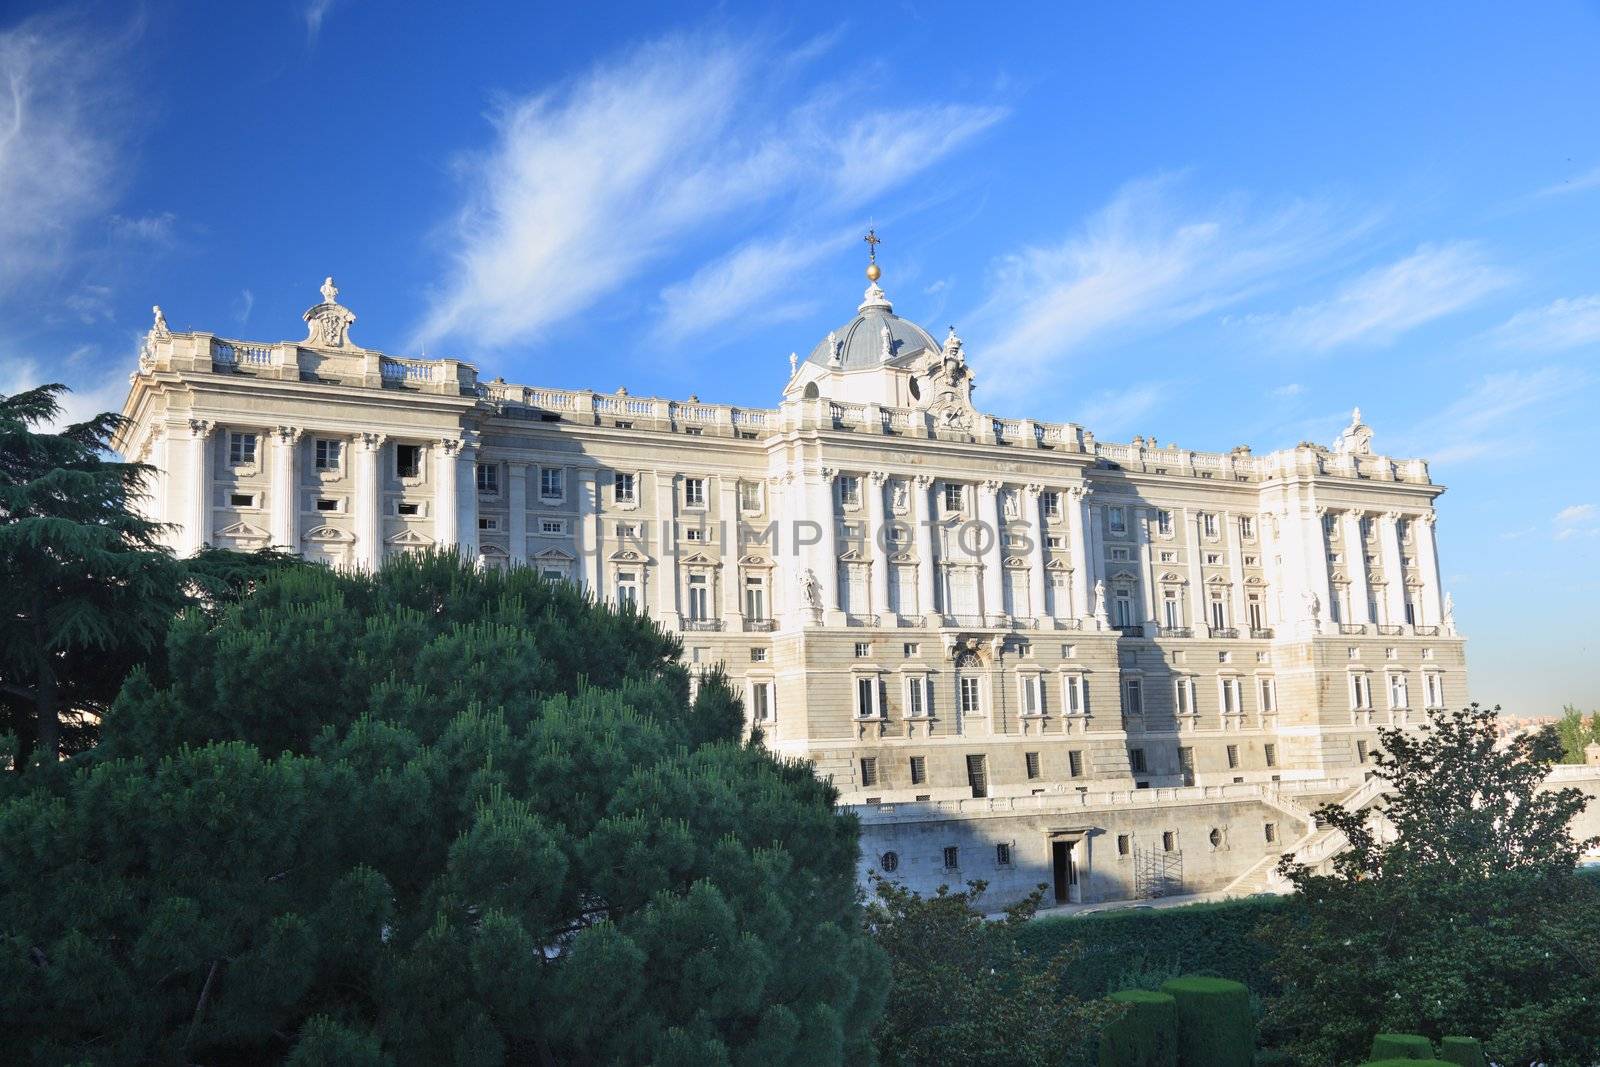 Madrid - Royal Palace facade by Maridav